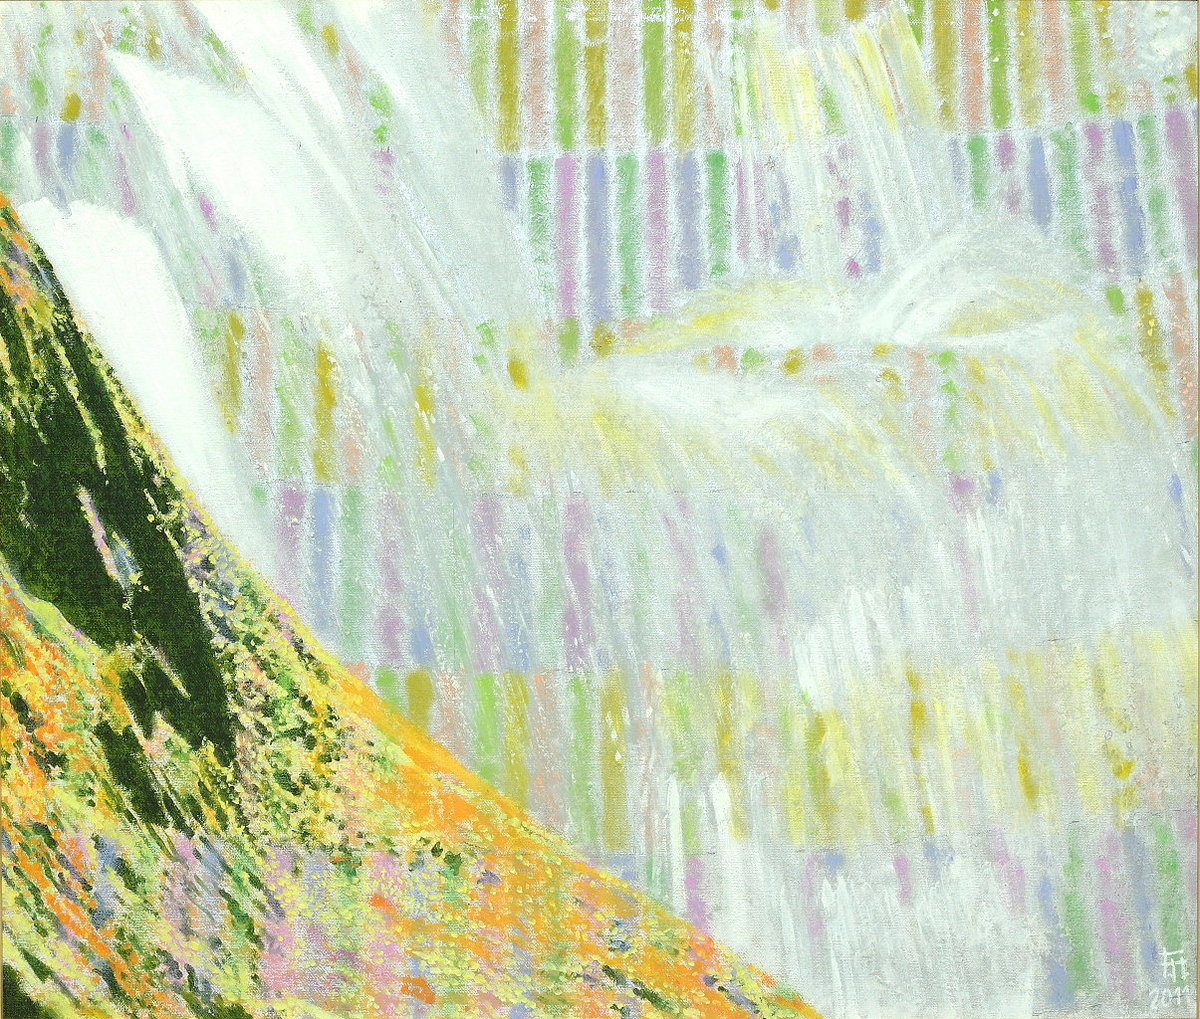  Ilsefälle IV , Gemälde: Öl, Ölpastell auf Buchbinderkarton, 2011, 60 x 70 cm; an den treppenartigen Wasserfällen der Ilse zwischen Ilsenburg und Brocken...